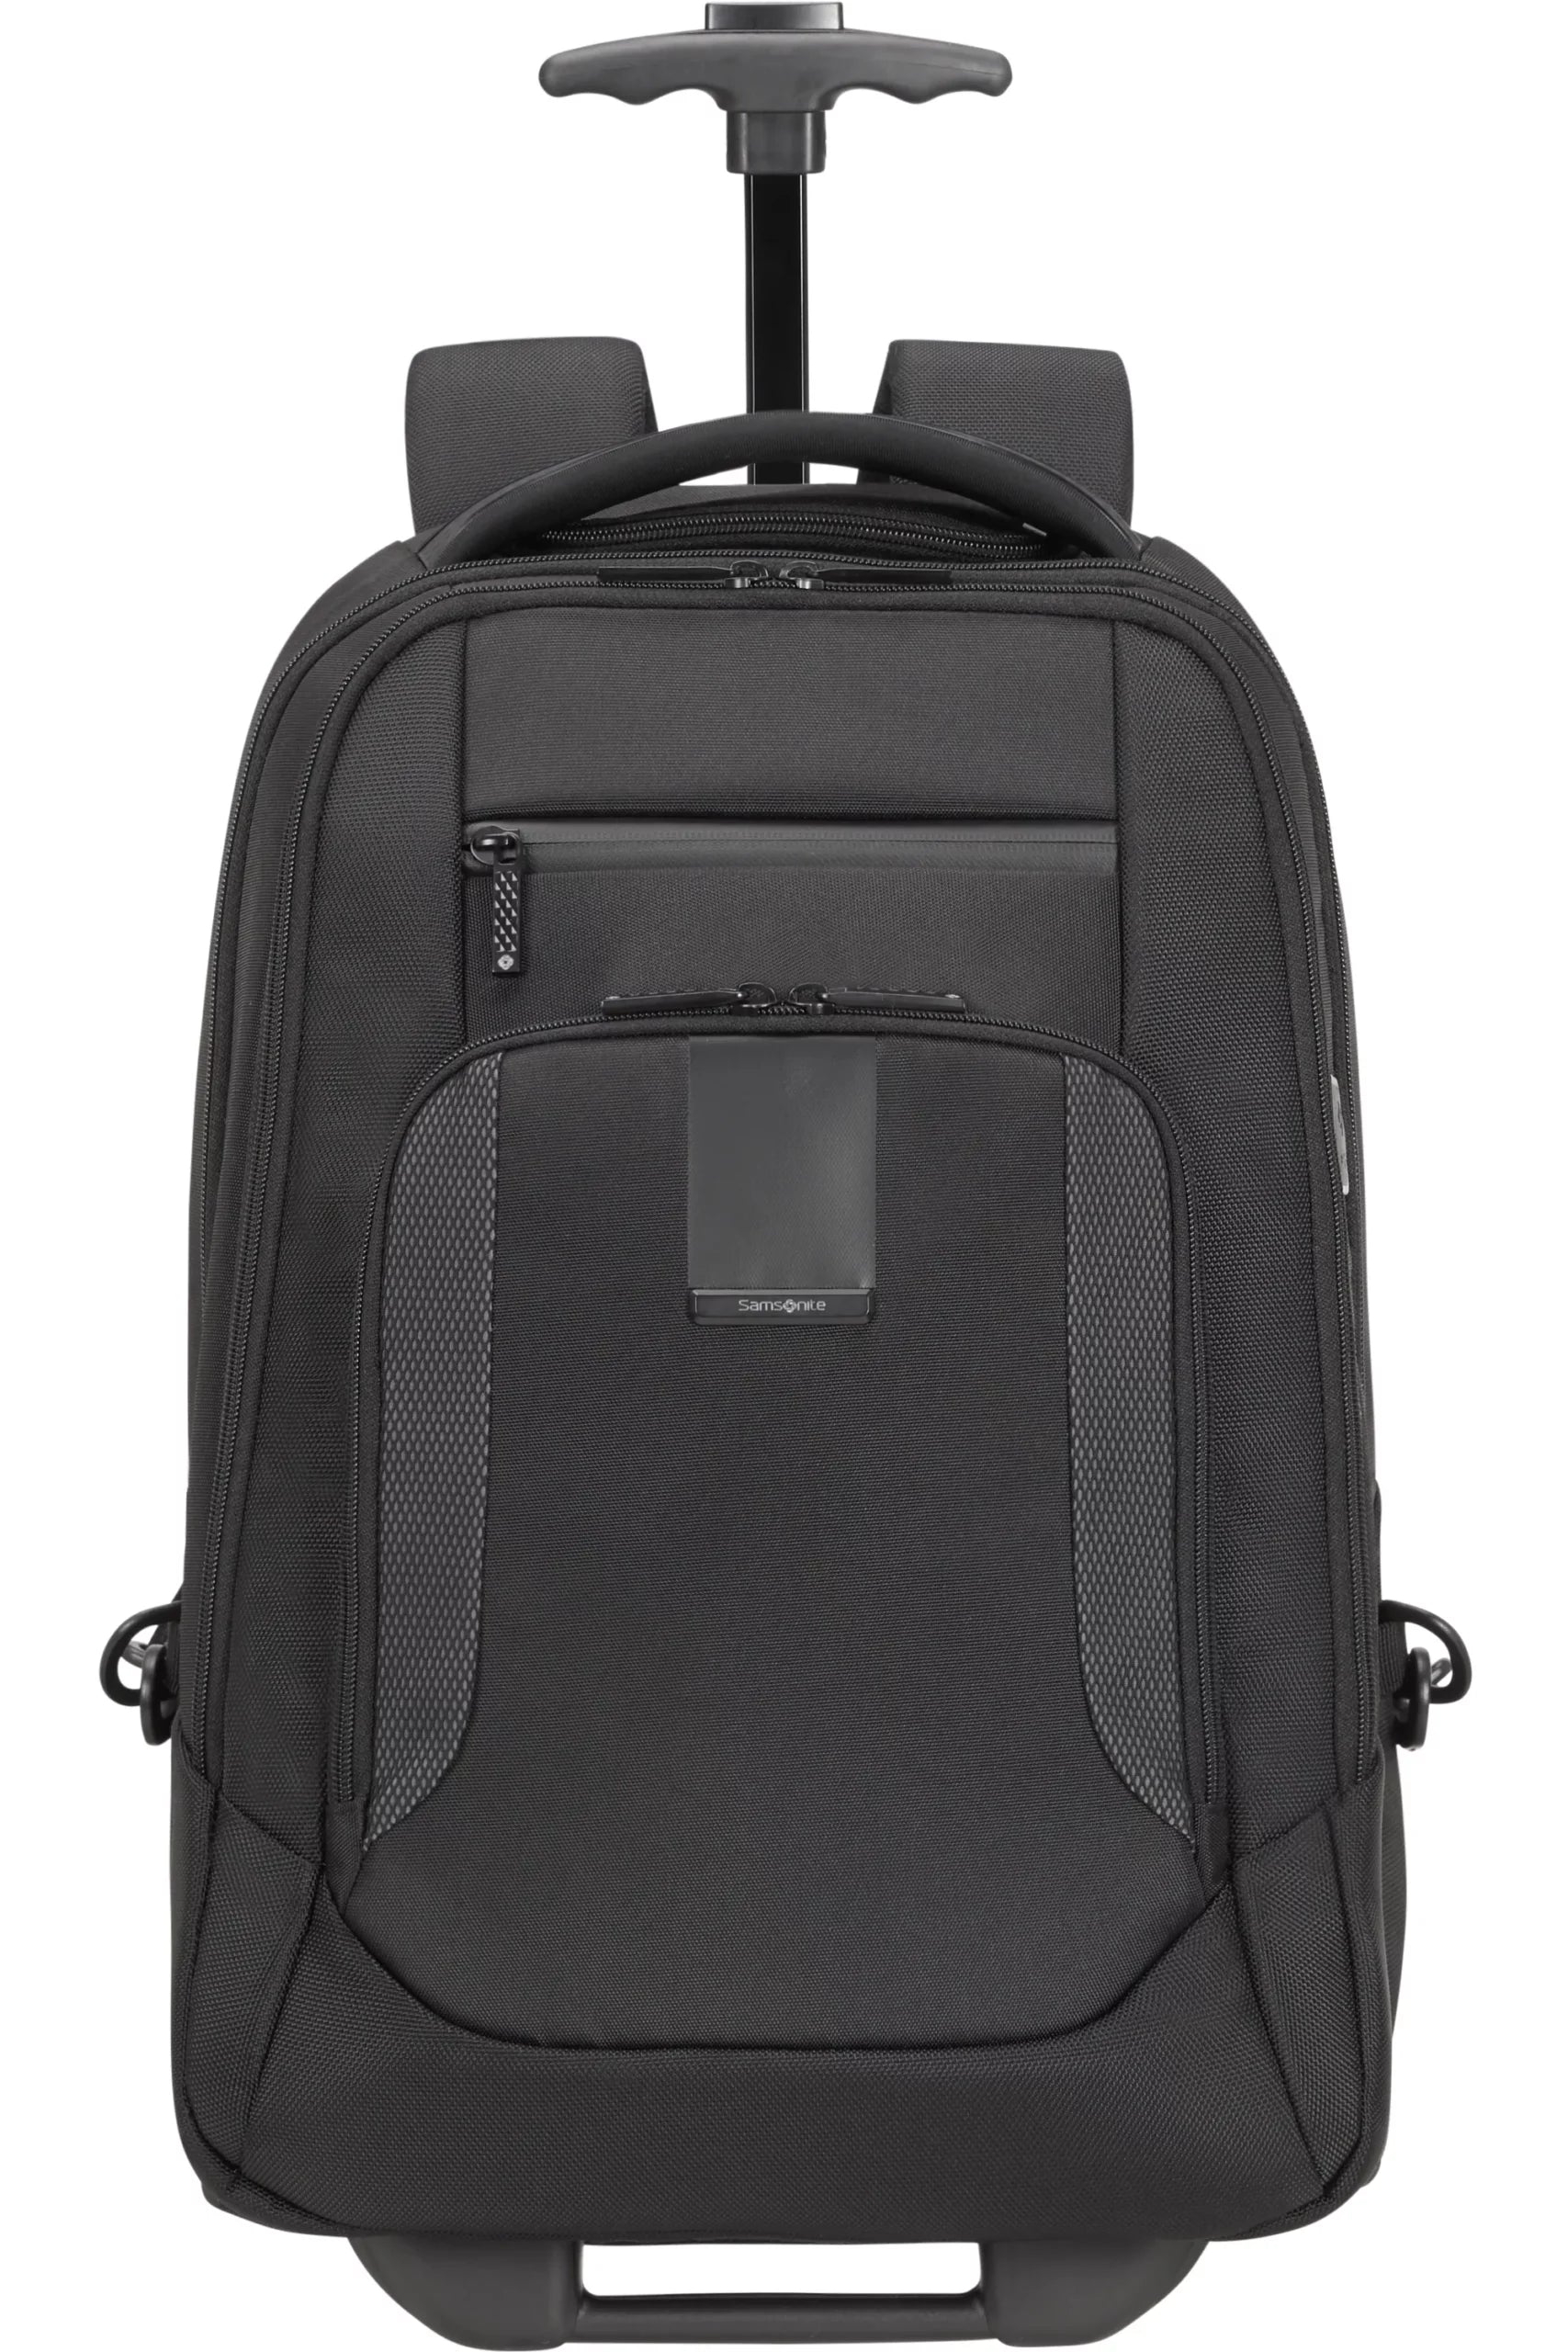 - Laptop Samsonite Backpack Black M Midtown